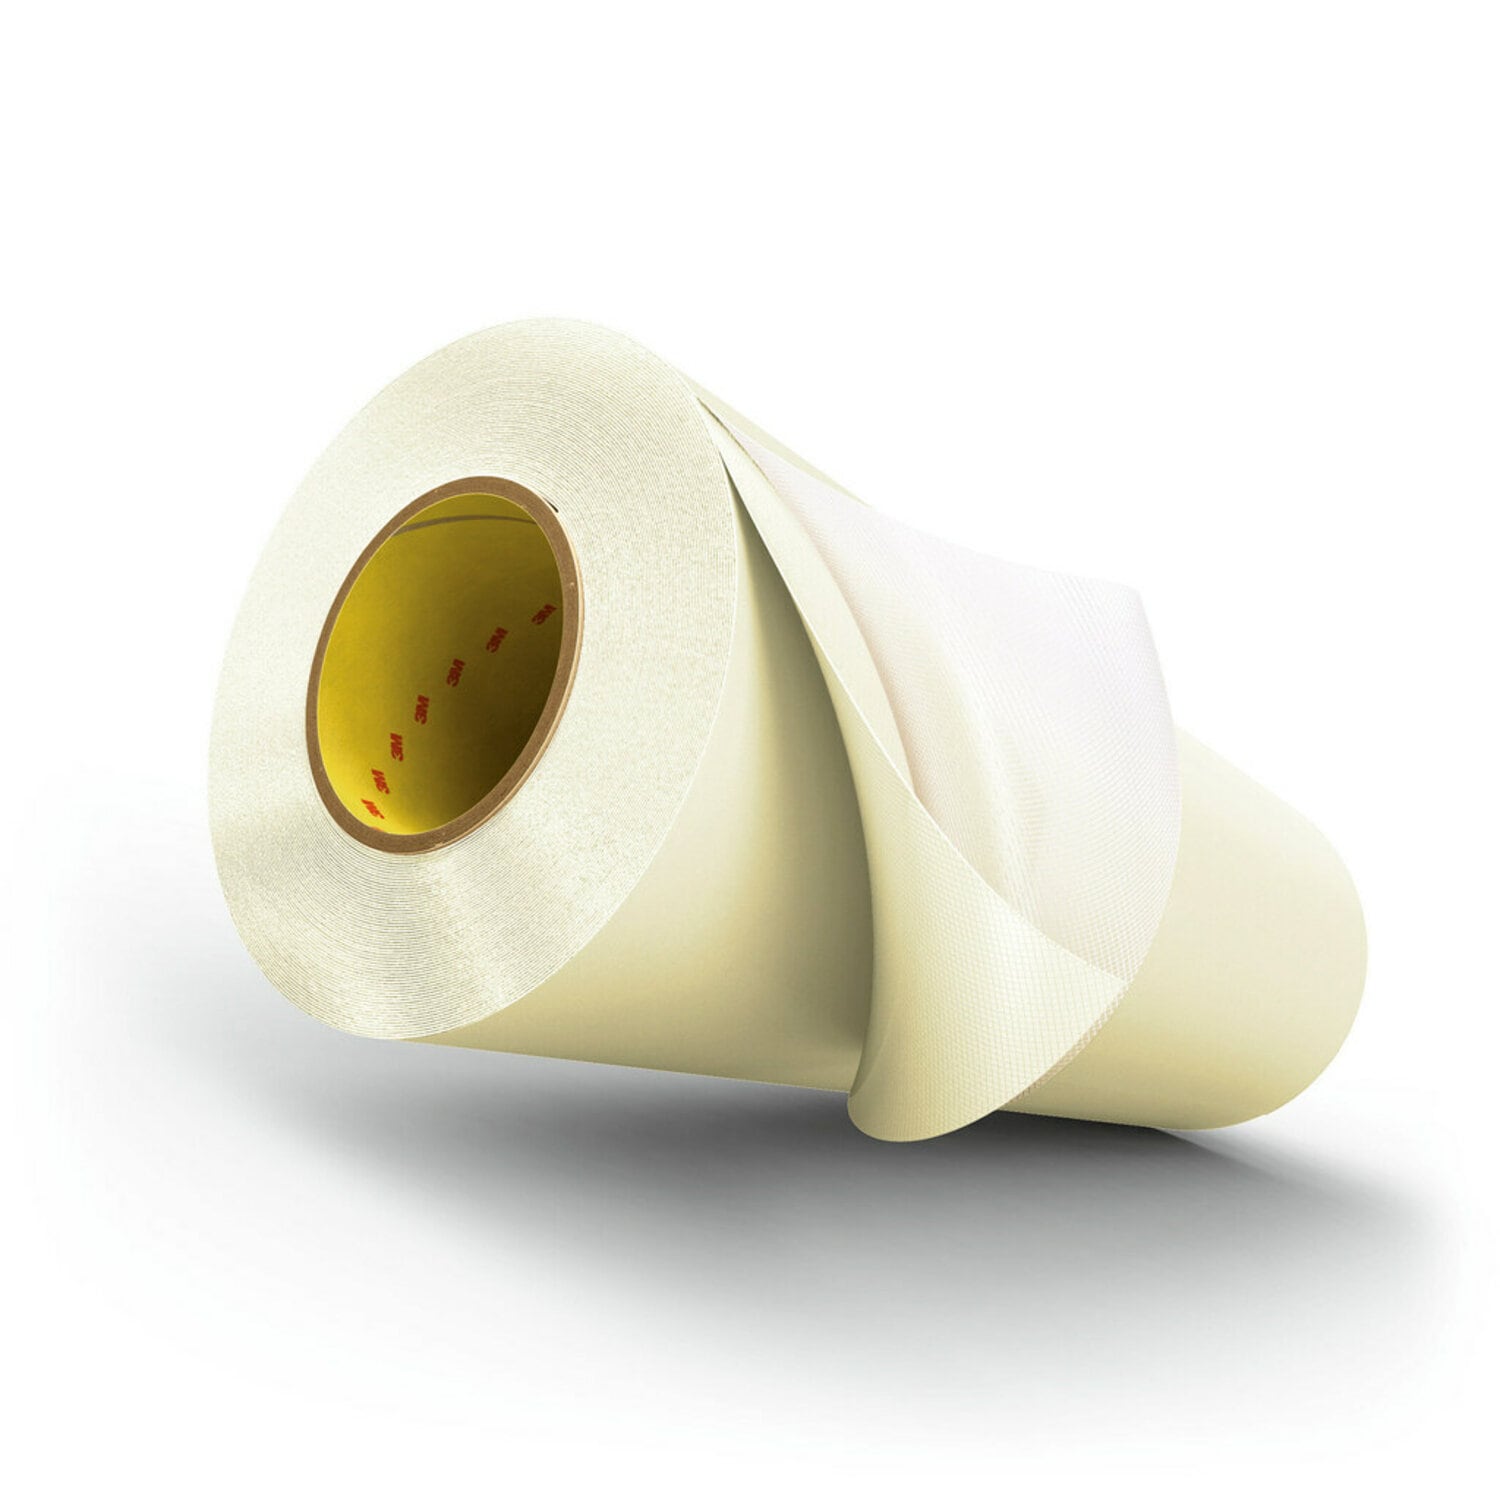 Organic Lightweight Flexible And Soft Fiberglass Insulation Roll For